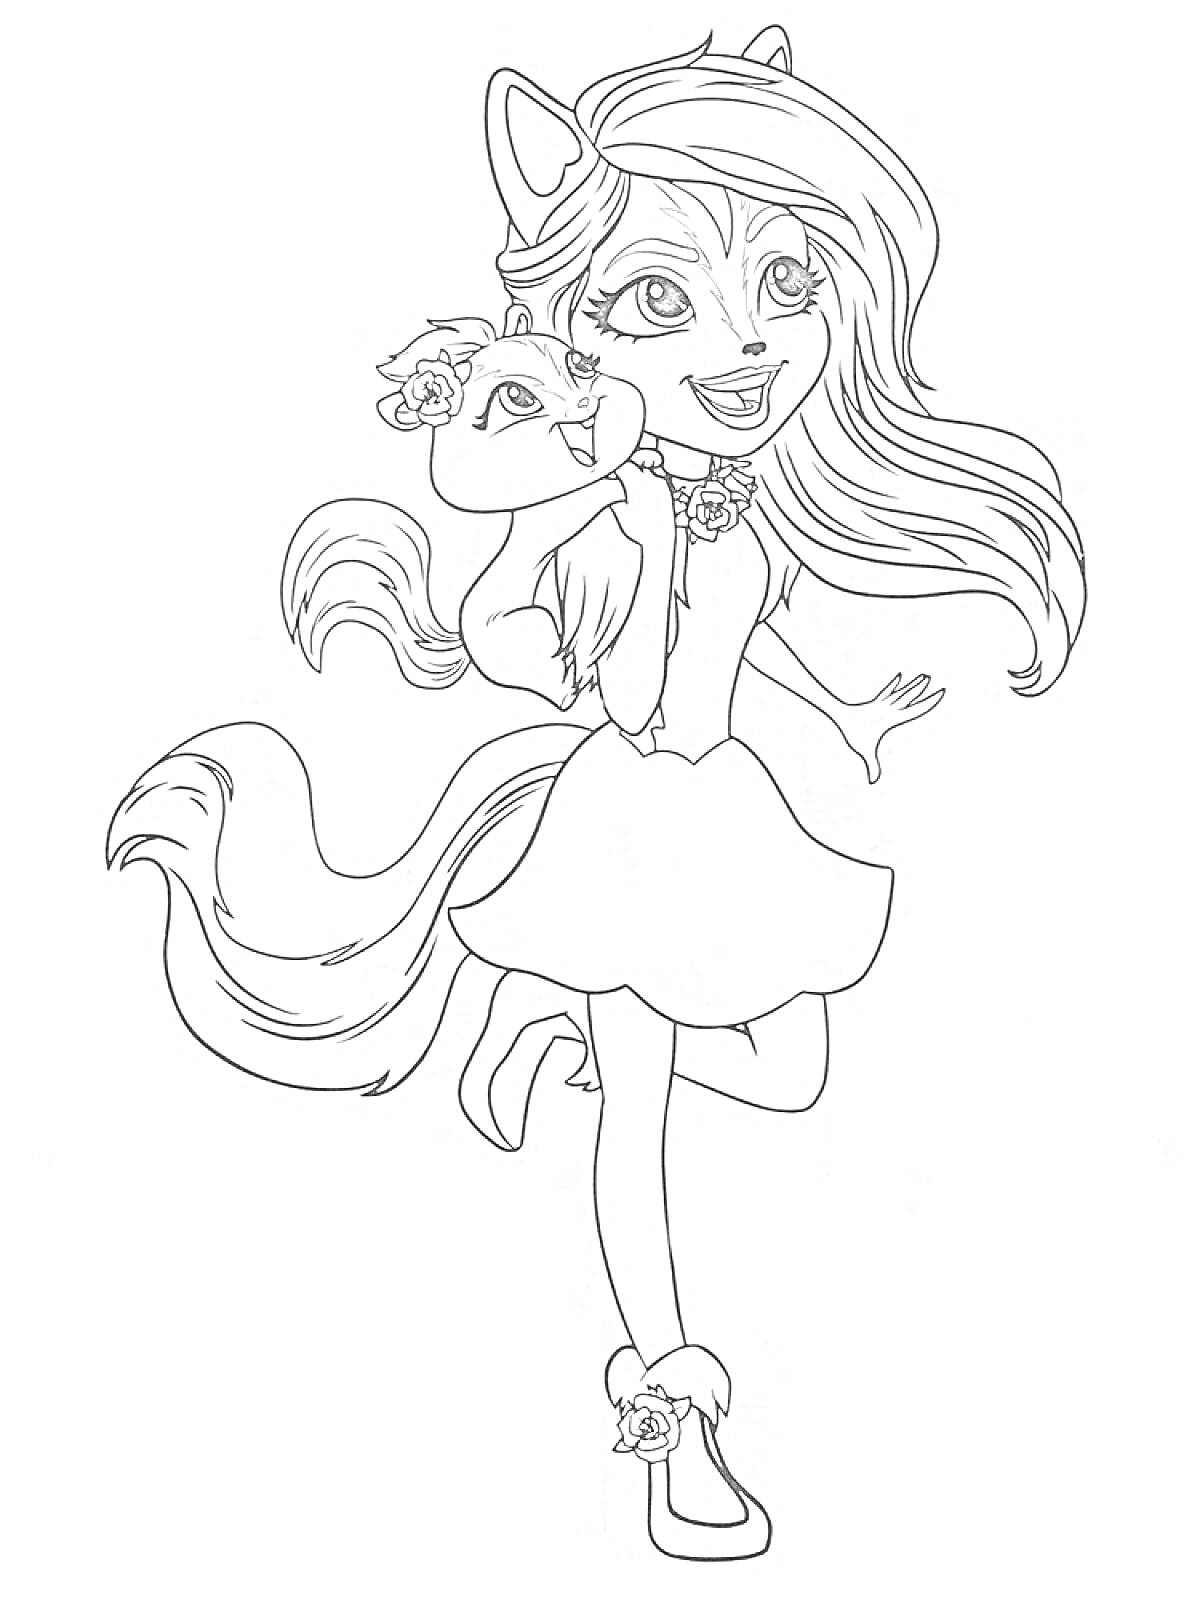 Девочка-энчантималс с ушками, держит животное, одета в платье и туфельки с мехом